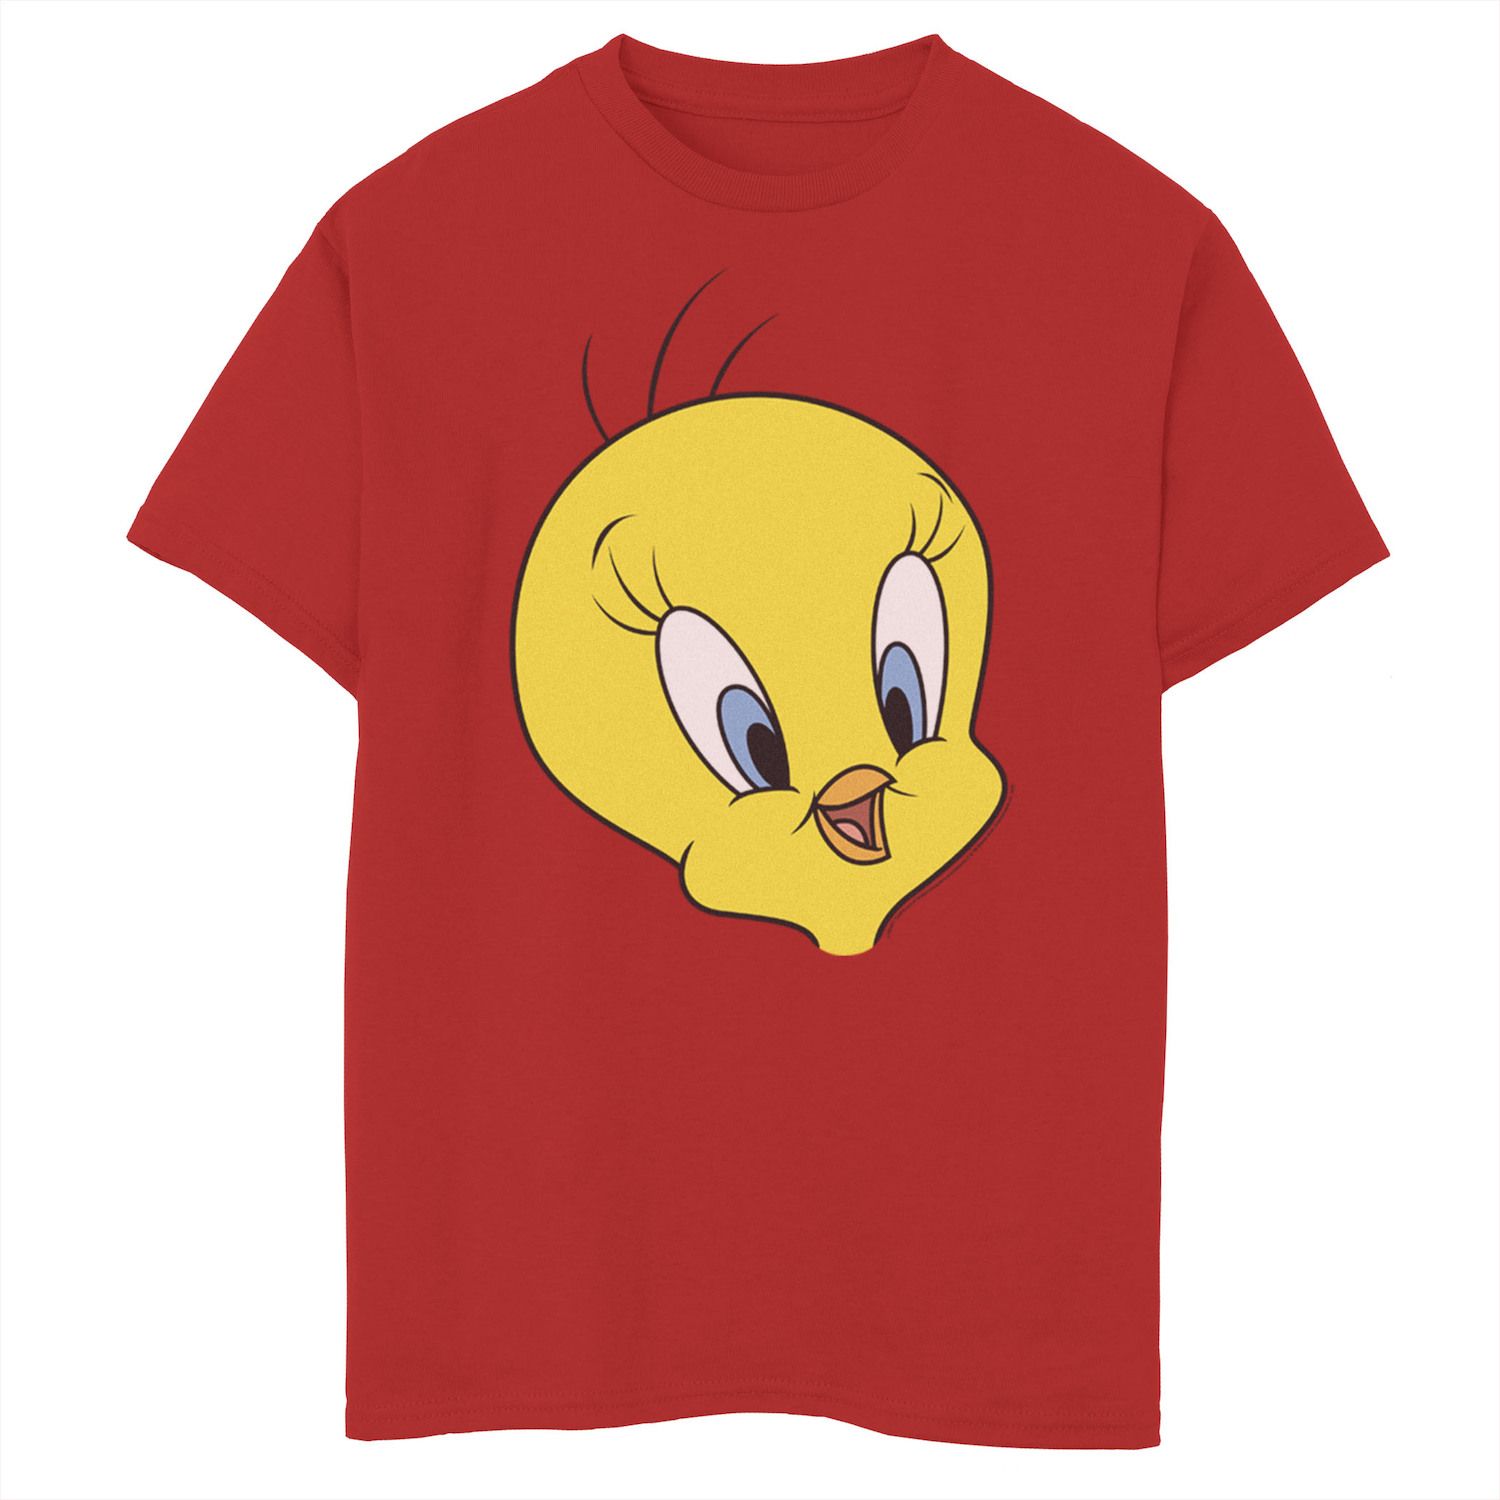 Boys 8-20 Looney Tunes Tweety Bird Big Face Graphic Tee